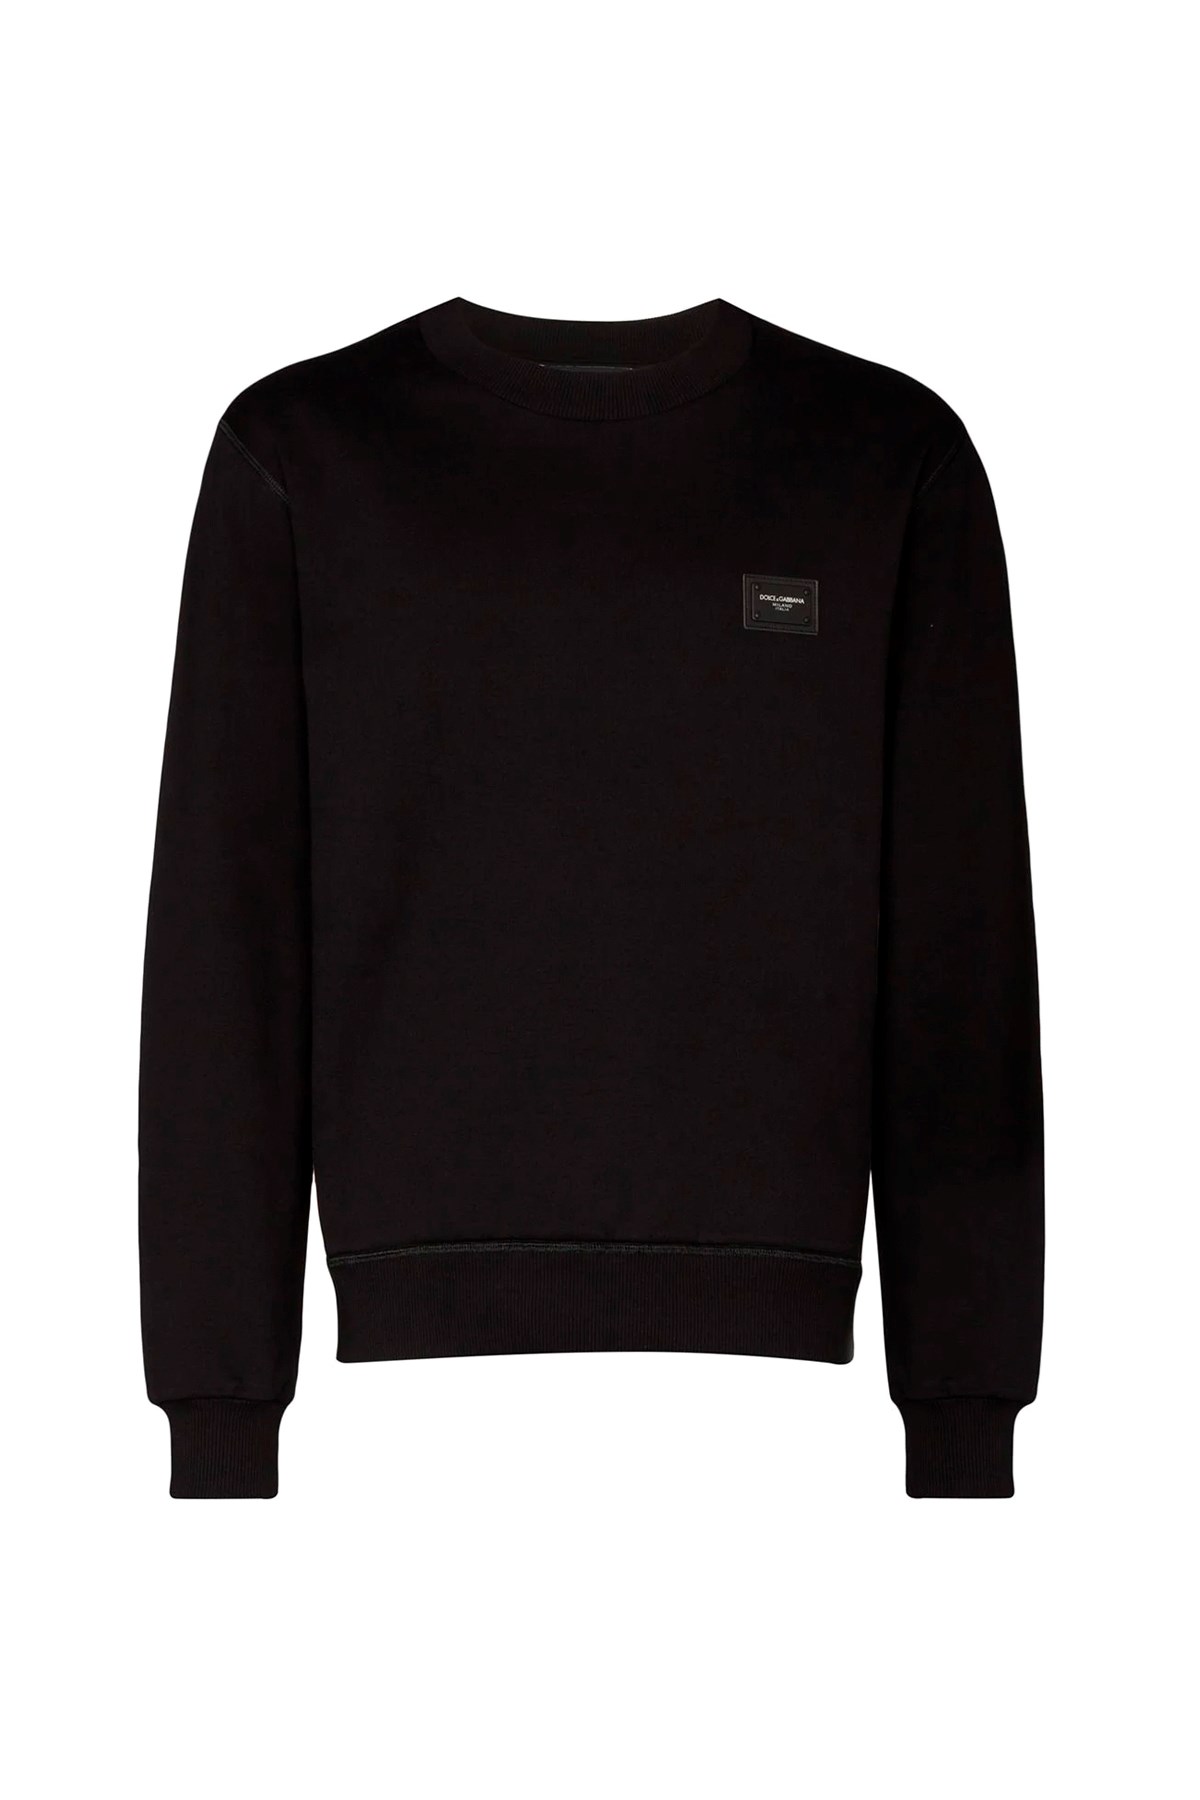 DOLCE & GABBANA 'Essential’ Sweatshirt